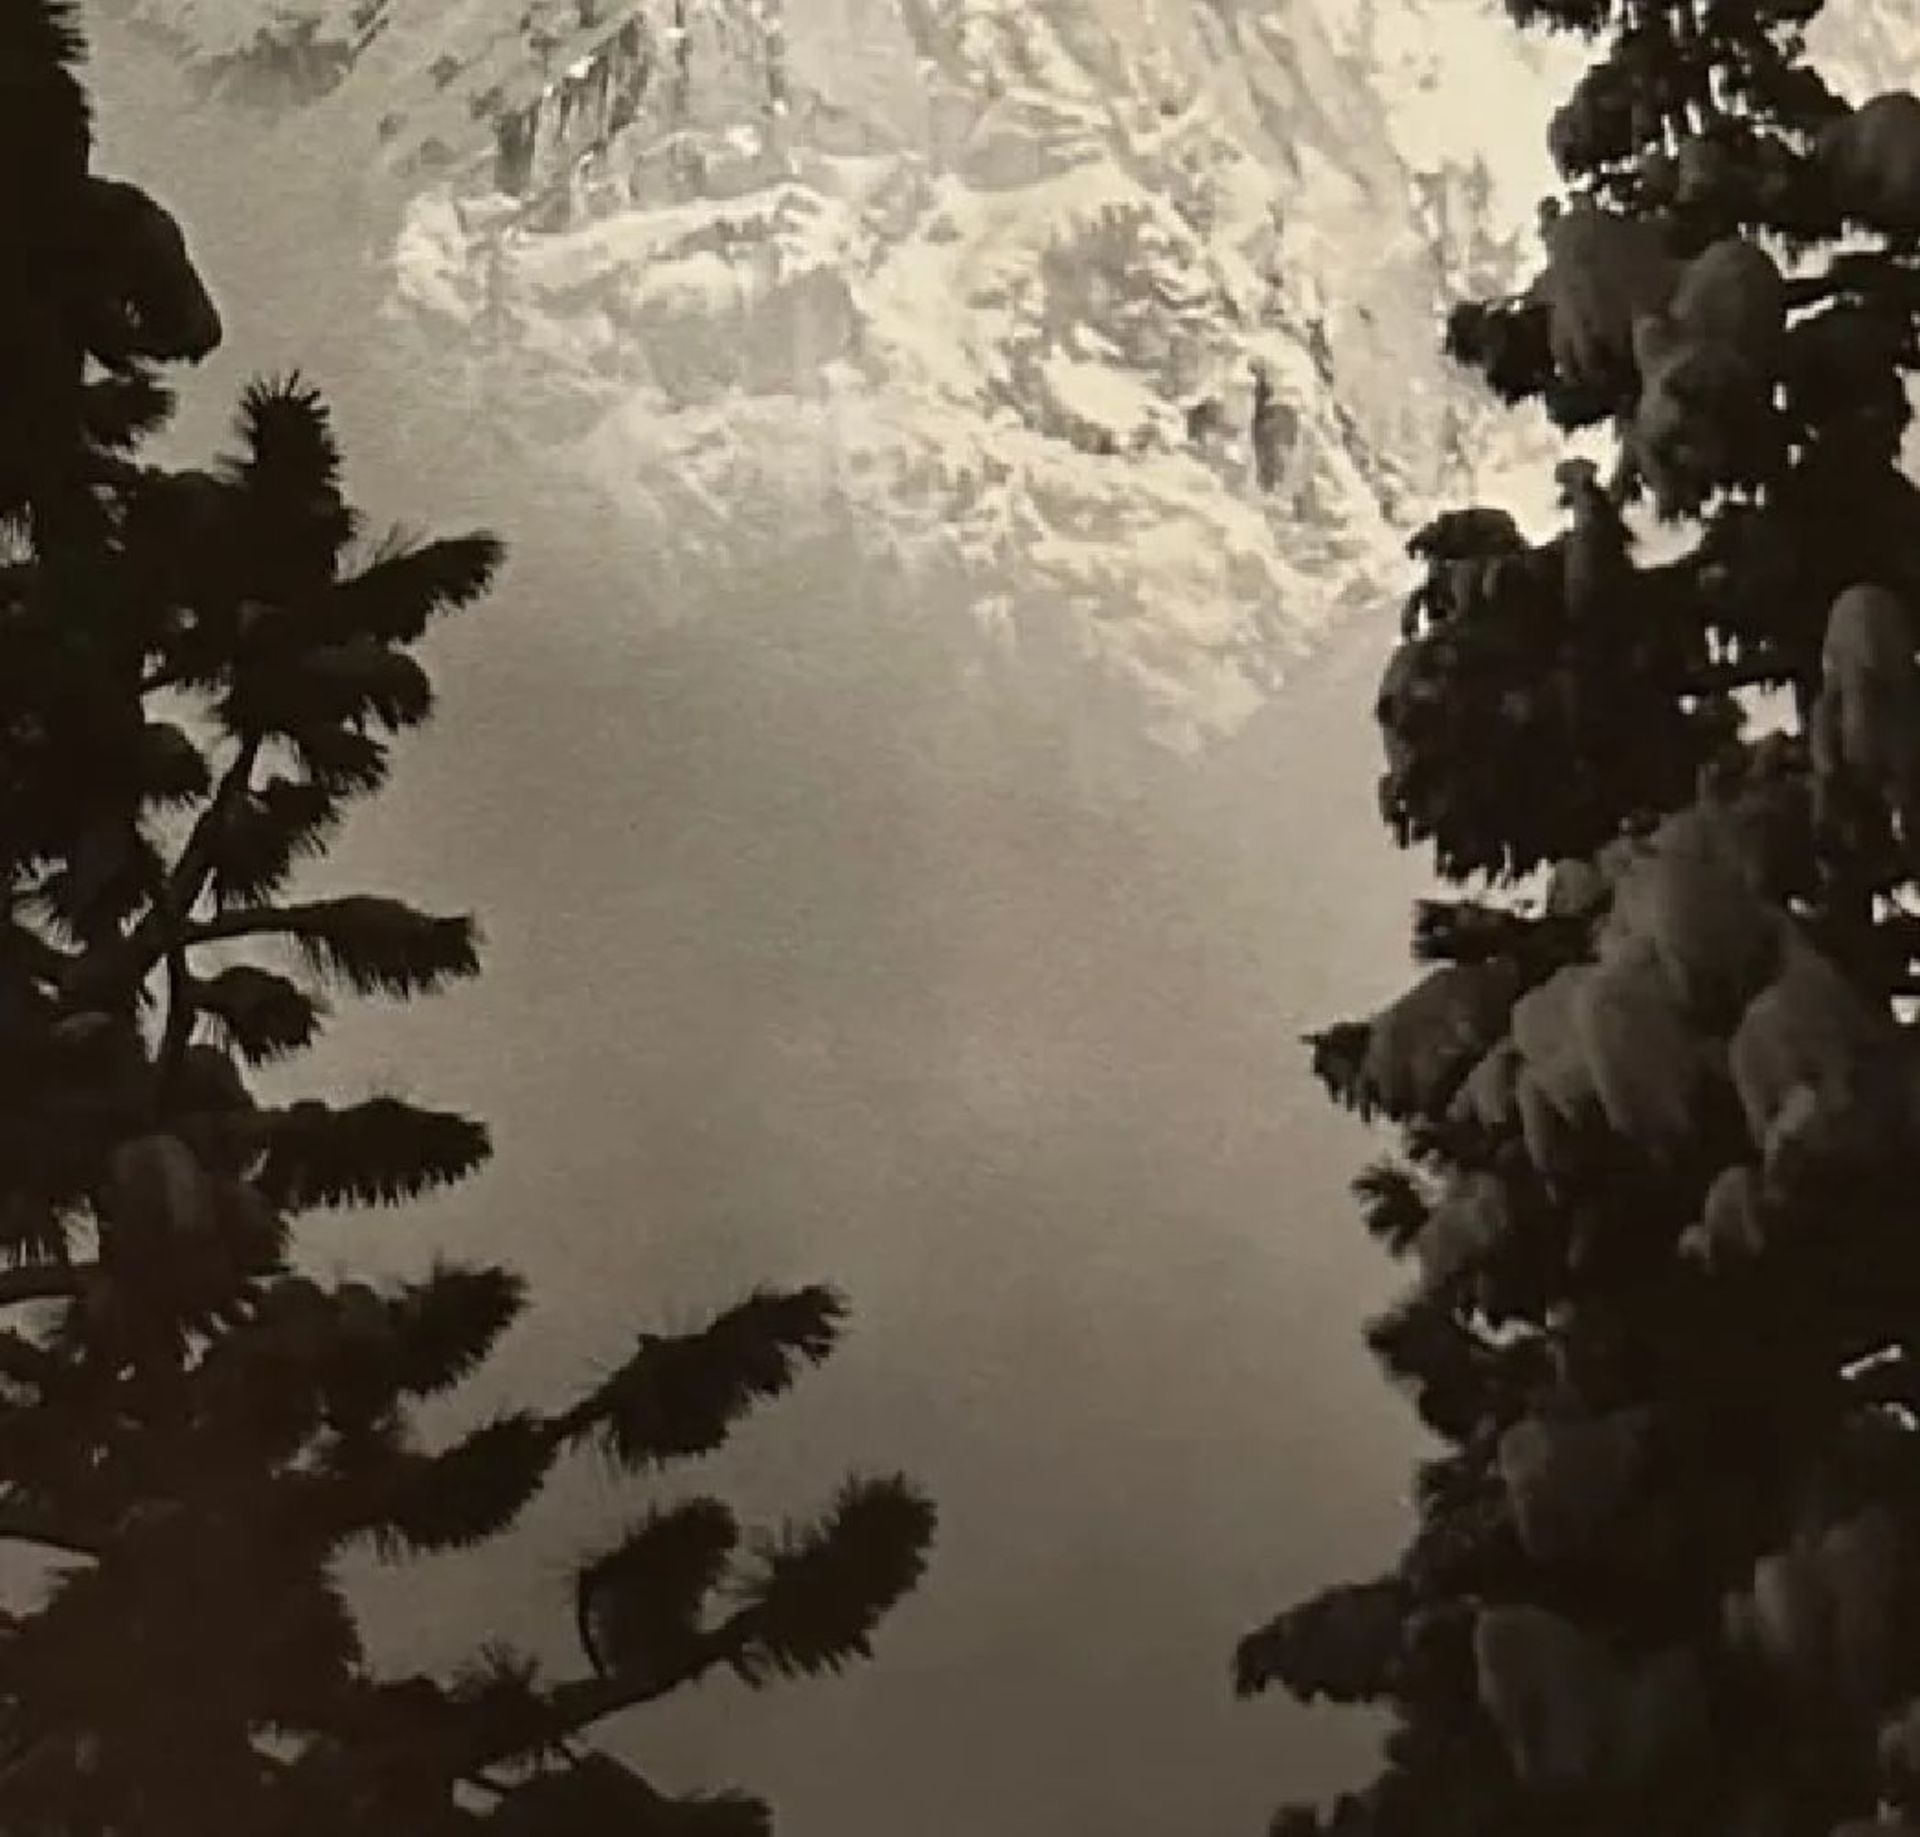 Ansel Adams "Eagle Peak" Print - Image 5 of 6